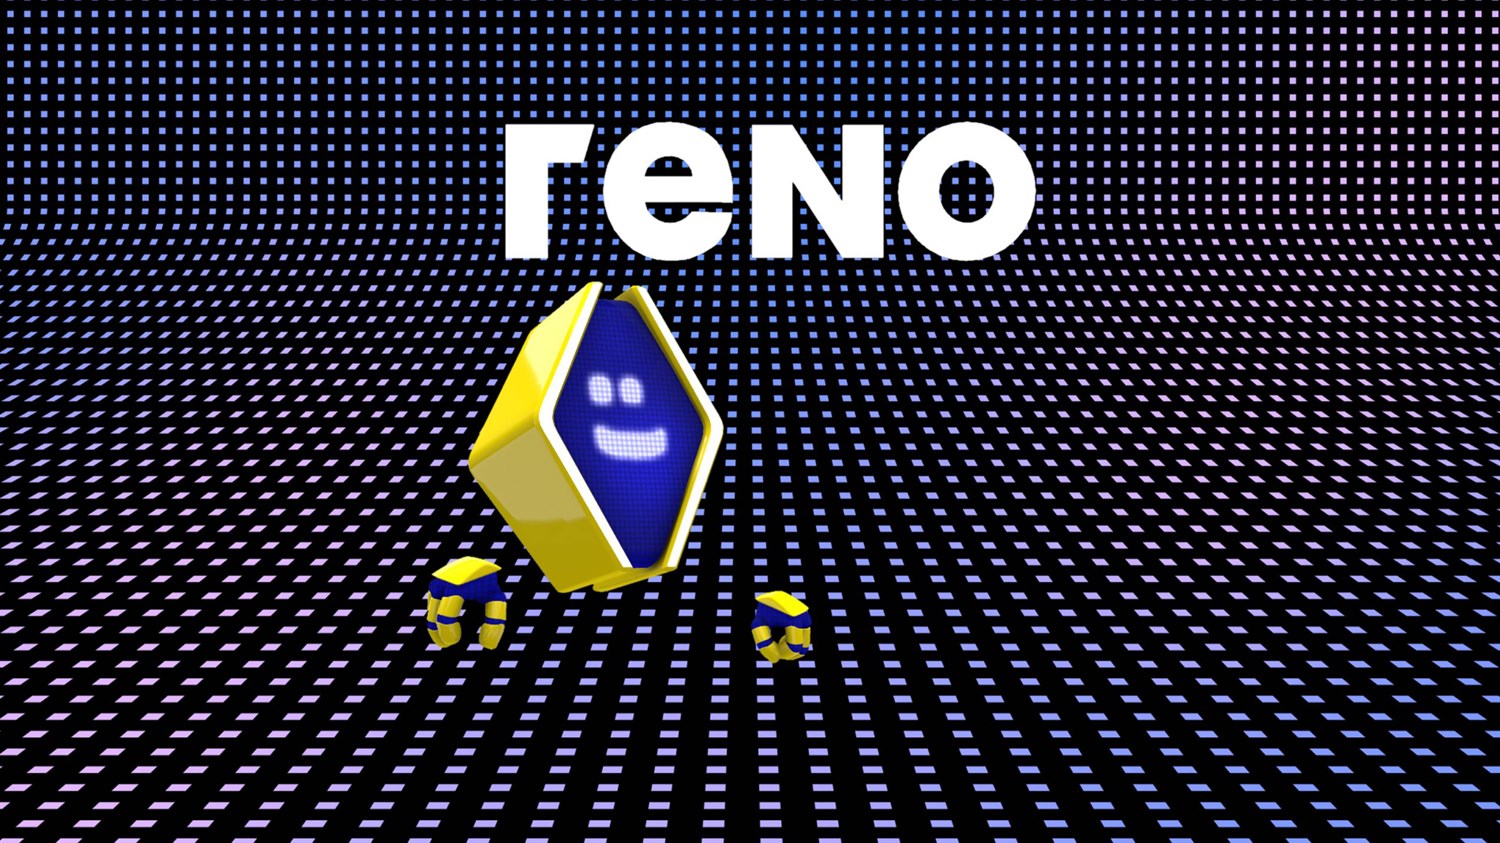 reno - L'avatar officiel - Renault